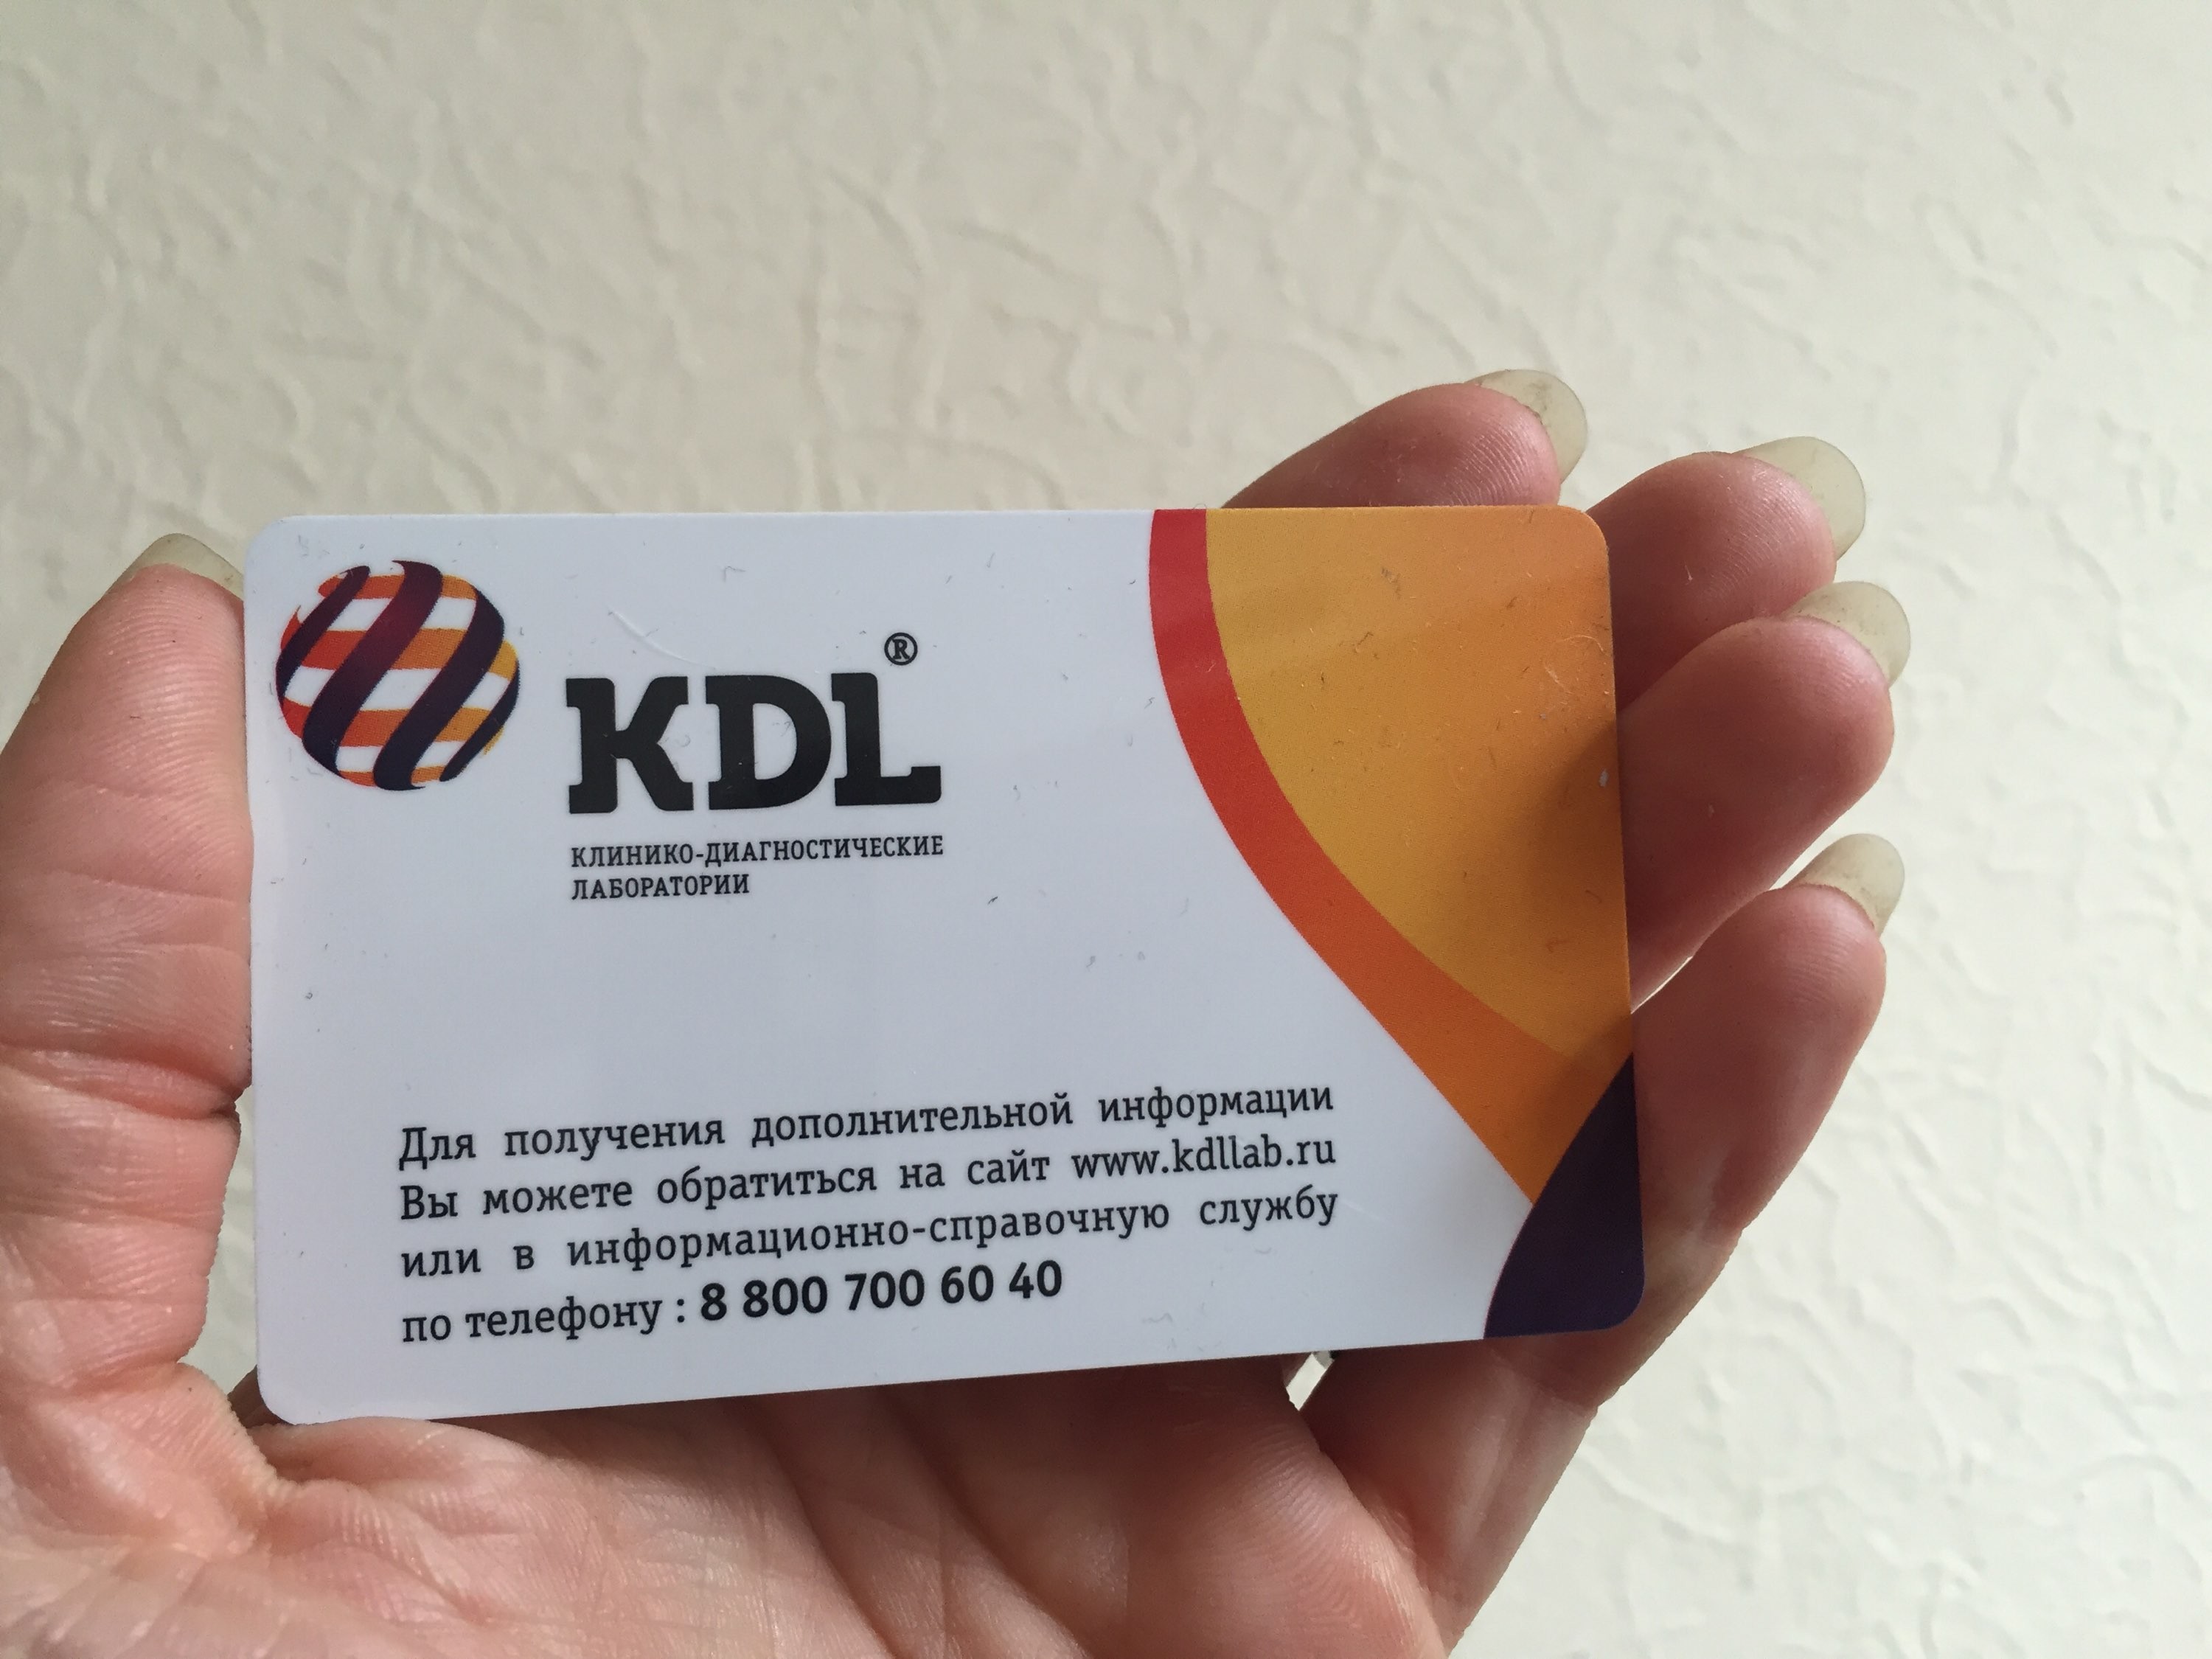 Кдл островского. КДЛ. KDL лаборатория. KDL логотип. Логотип КДЛ лаборатория.